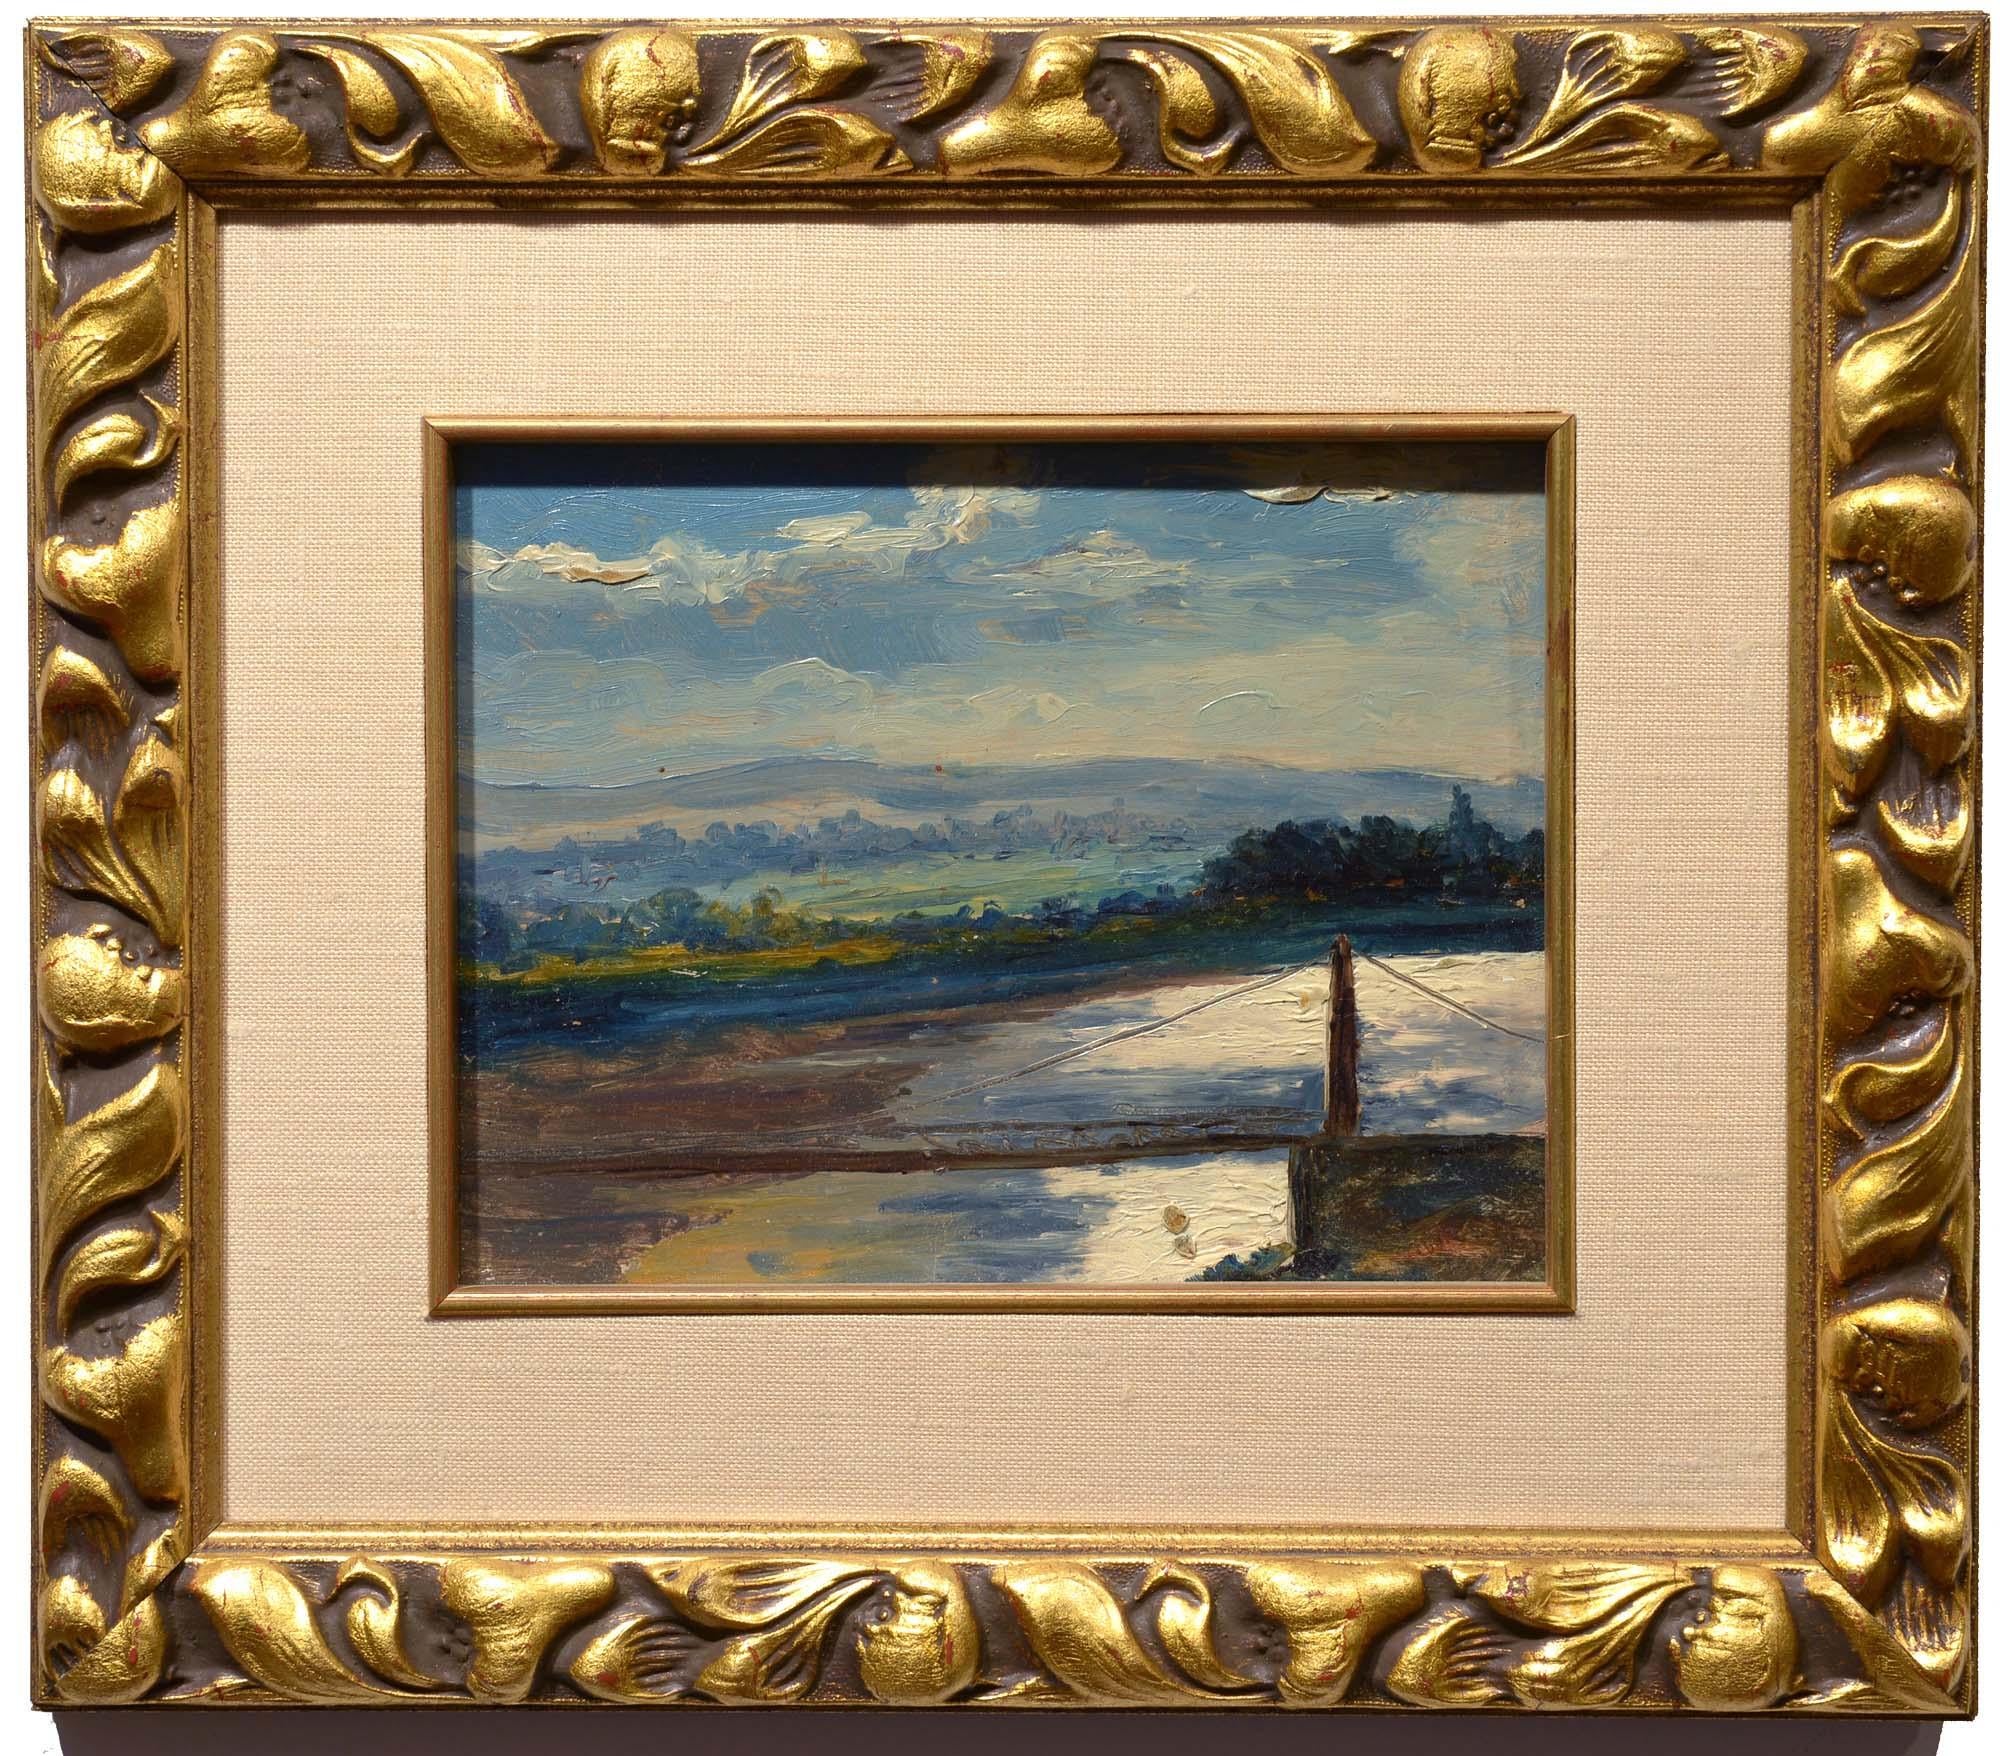 Florence Countryside, Oscar Socec, Swiss, Modern, landscape, Italy, oil - Painting by Oscar Yosef de Kerdsmont Socec